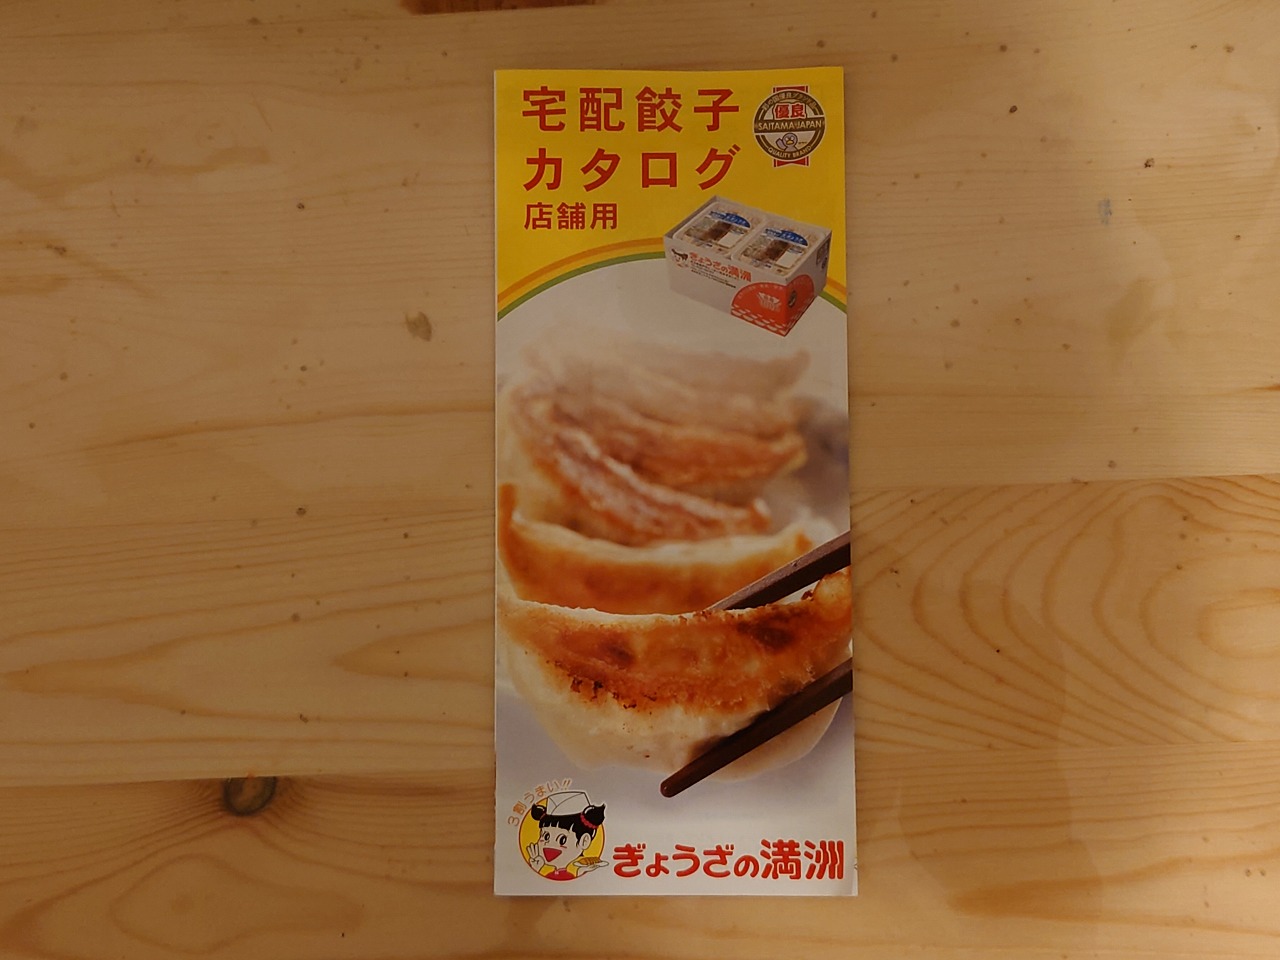 ぎょうざの満州】の「業務用 冷凍生ぎょうざ」を食べてみました！ | TMチャンネル